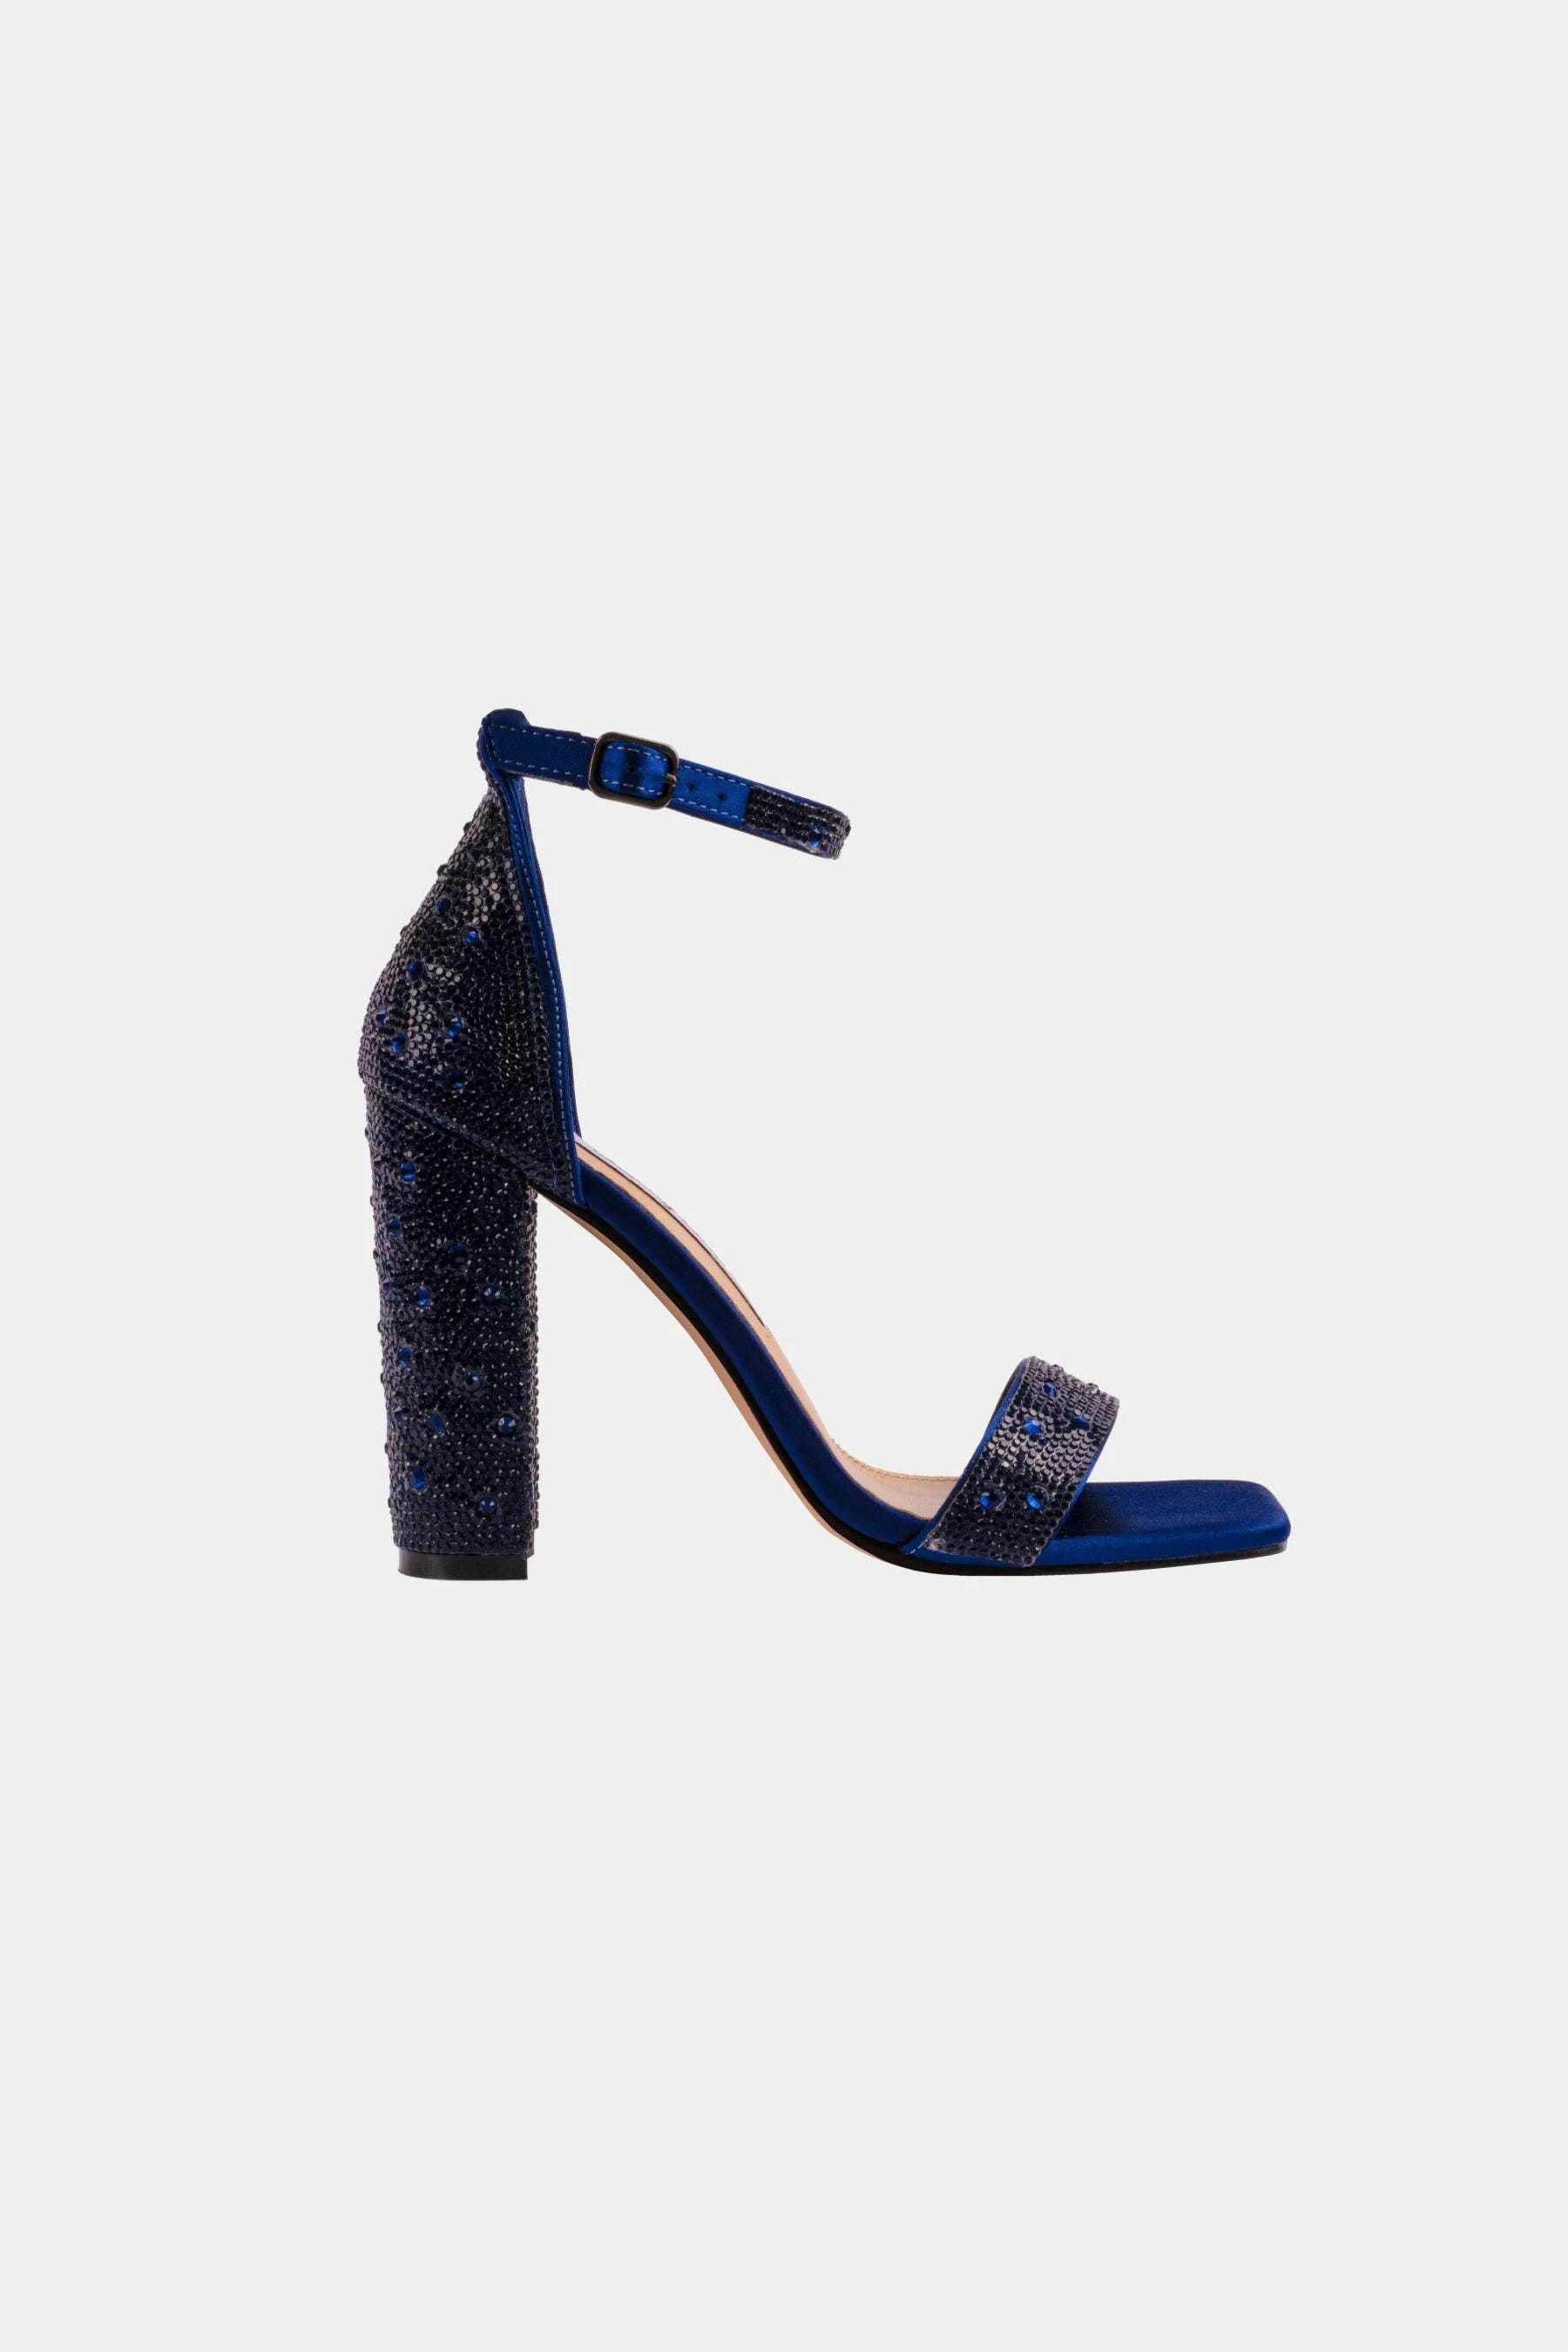 Embellished Black Squared Toe Sandals | Image